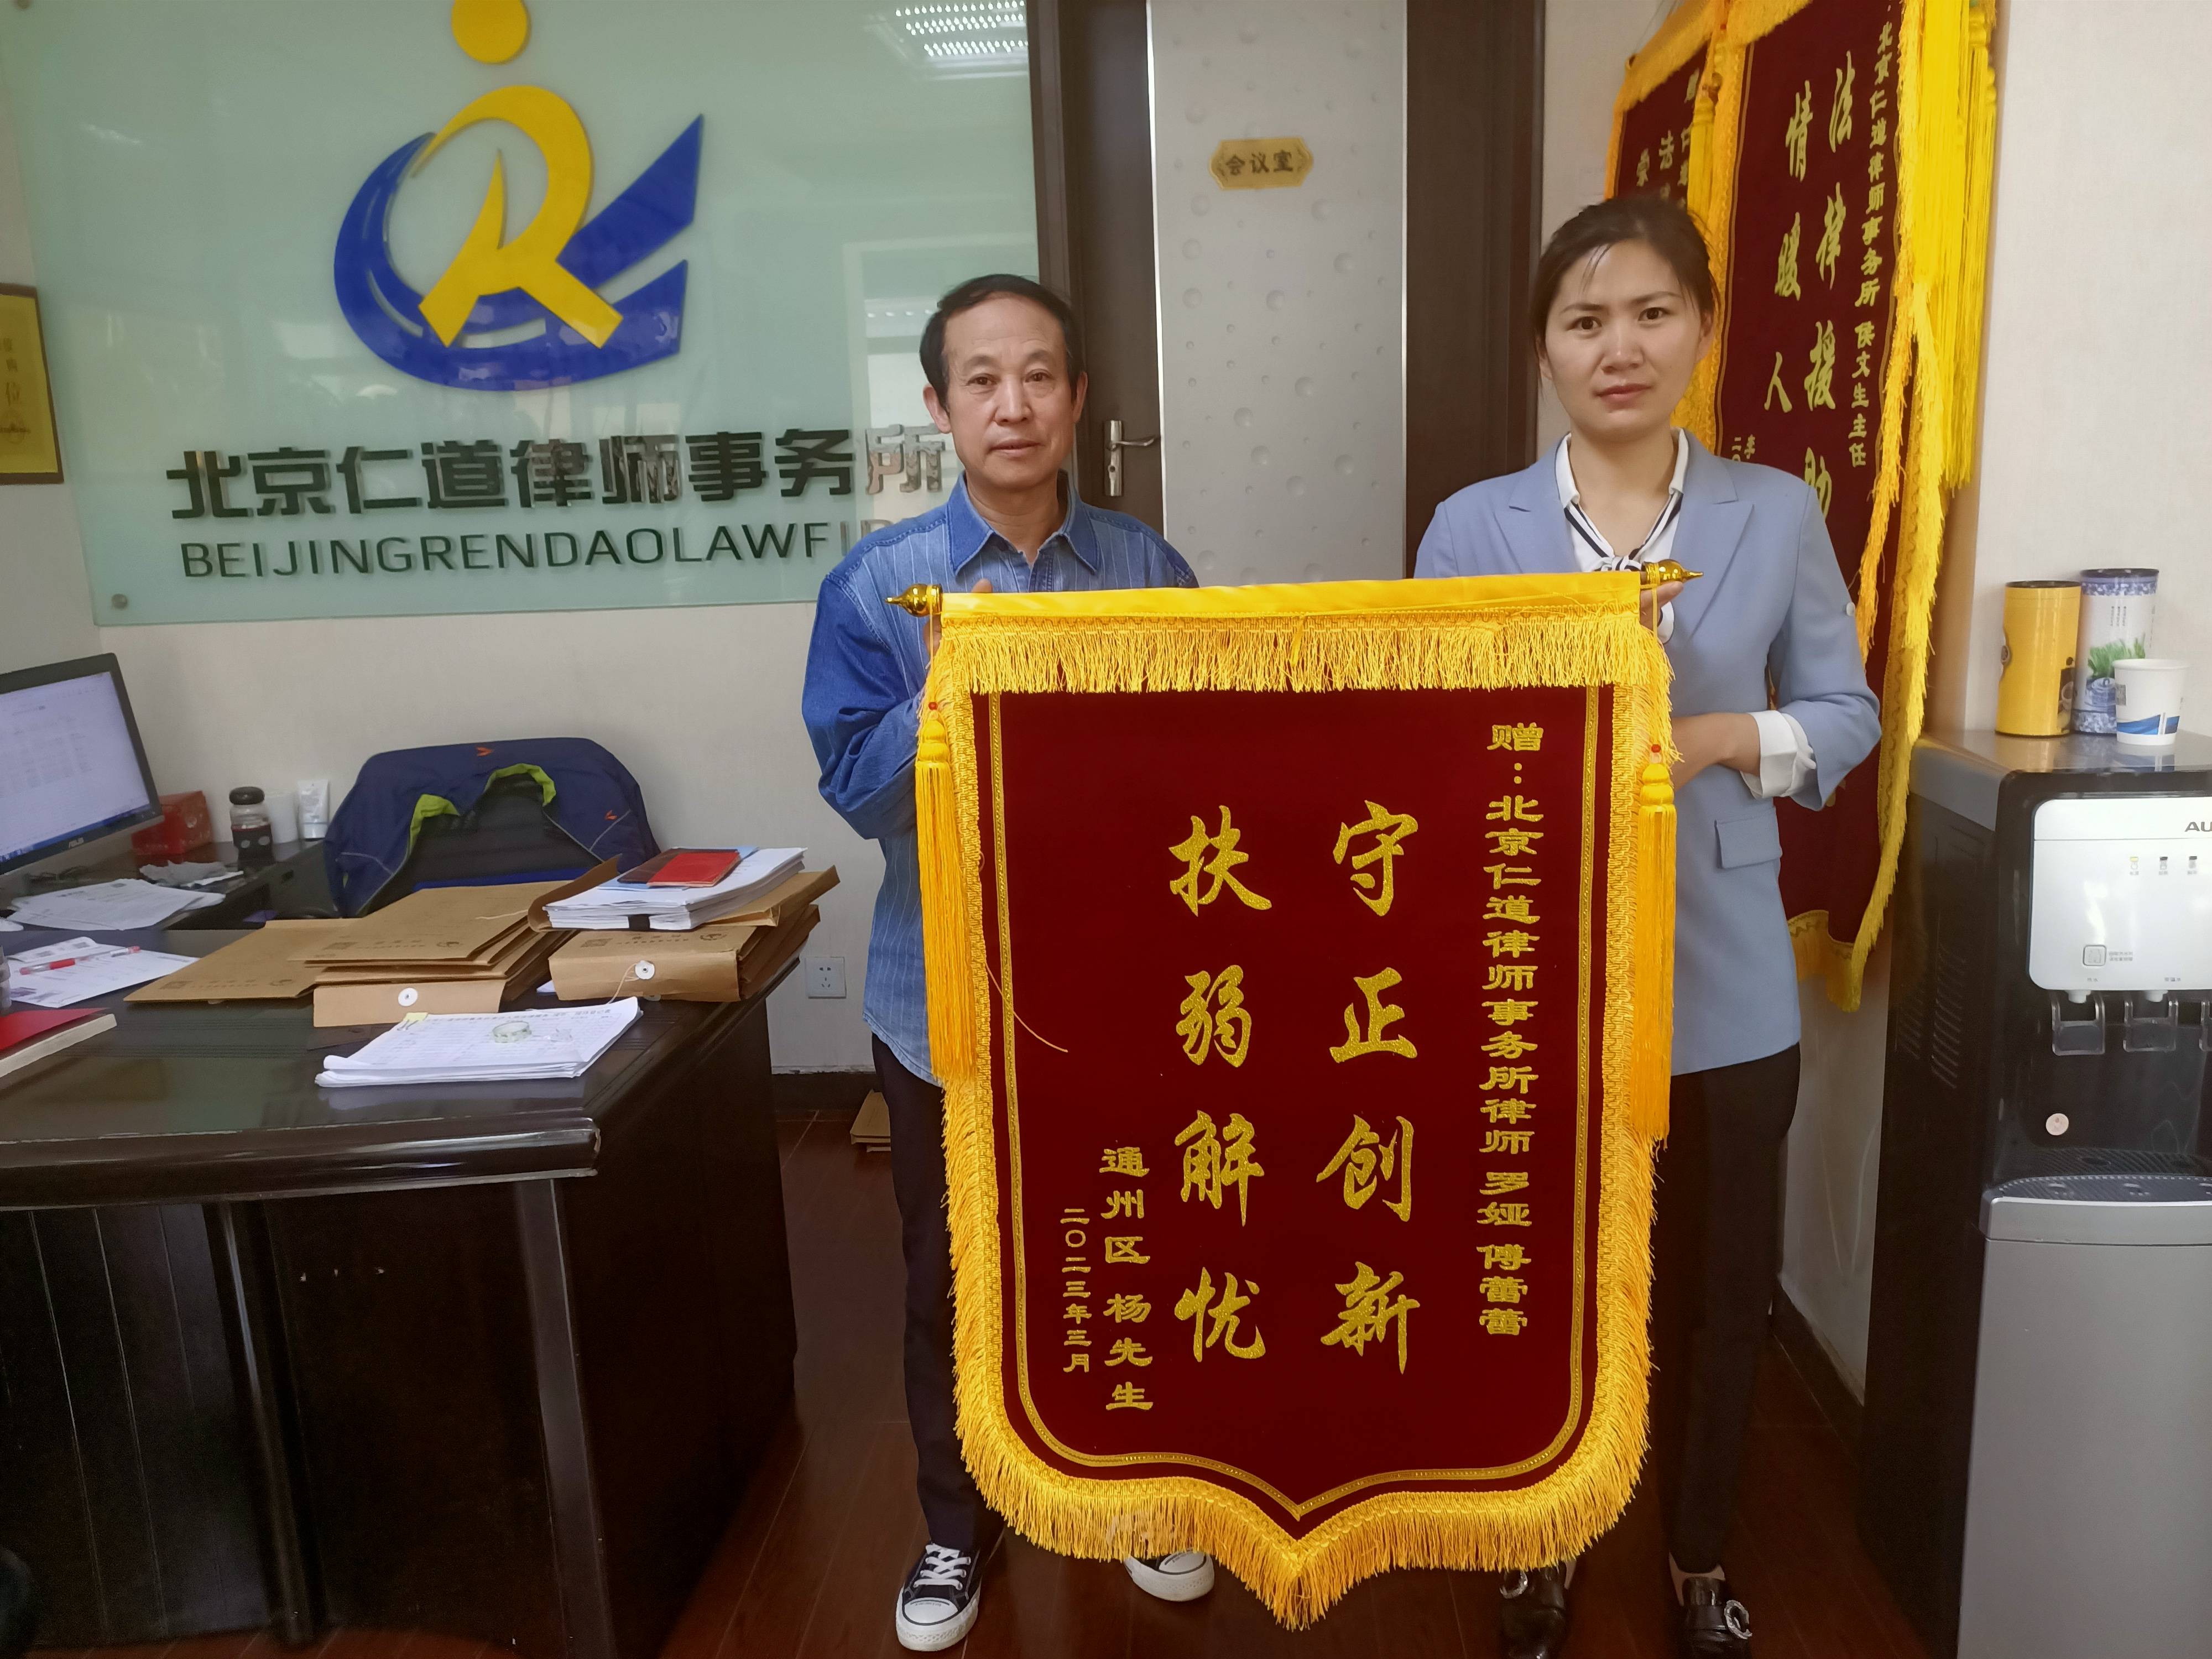 杨先生赠北京仁道律师事务所罗娅律师、傅蕾蕾律师锦旗